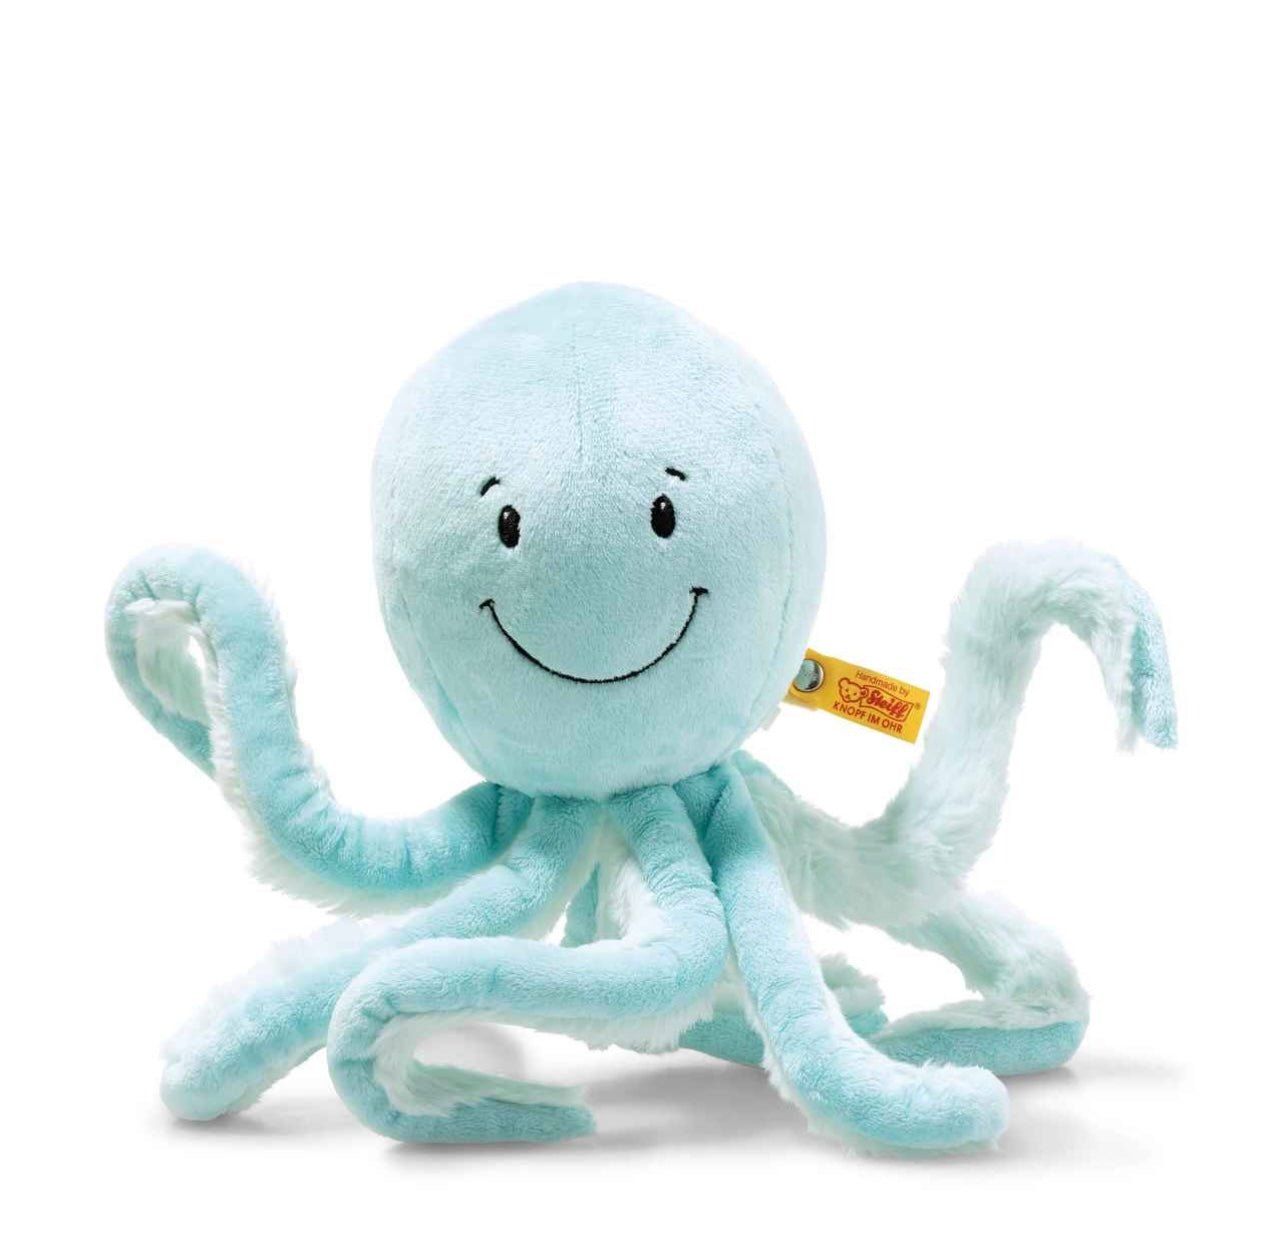 Steiff Octopus 11” Plush